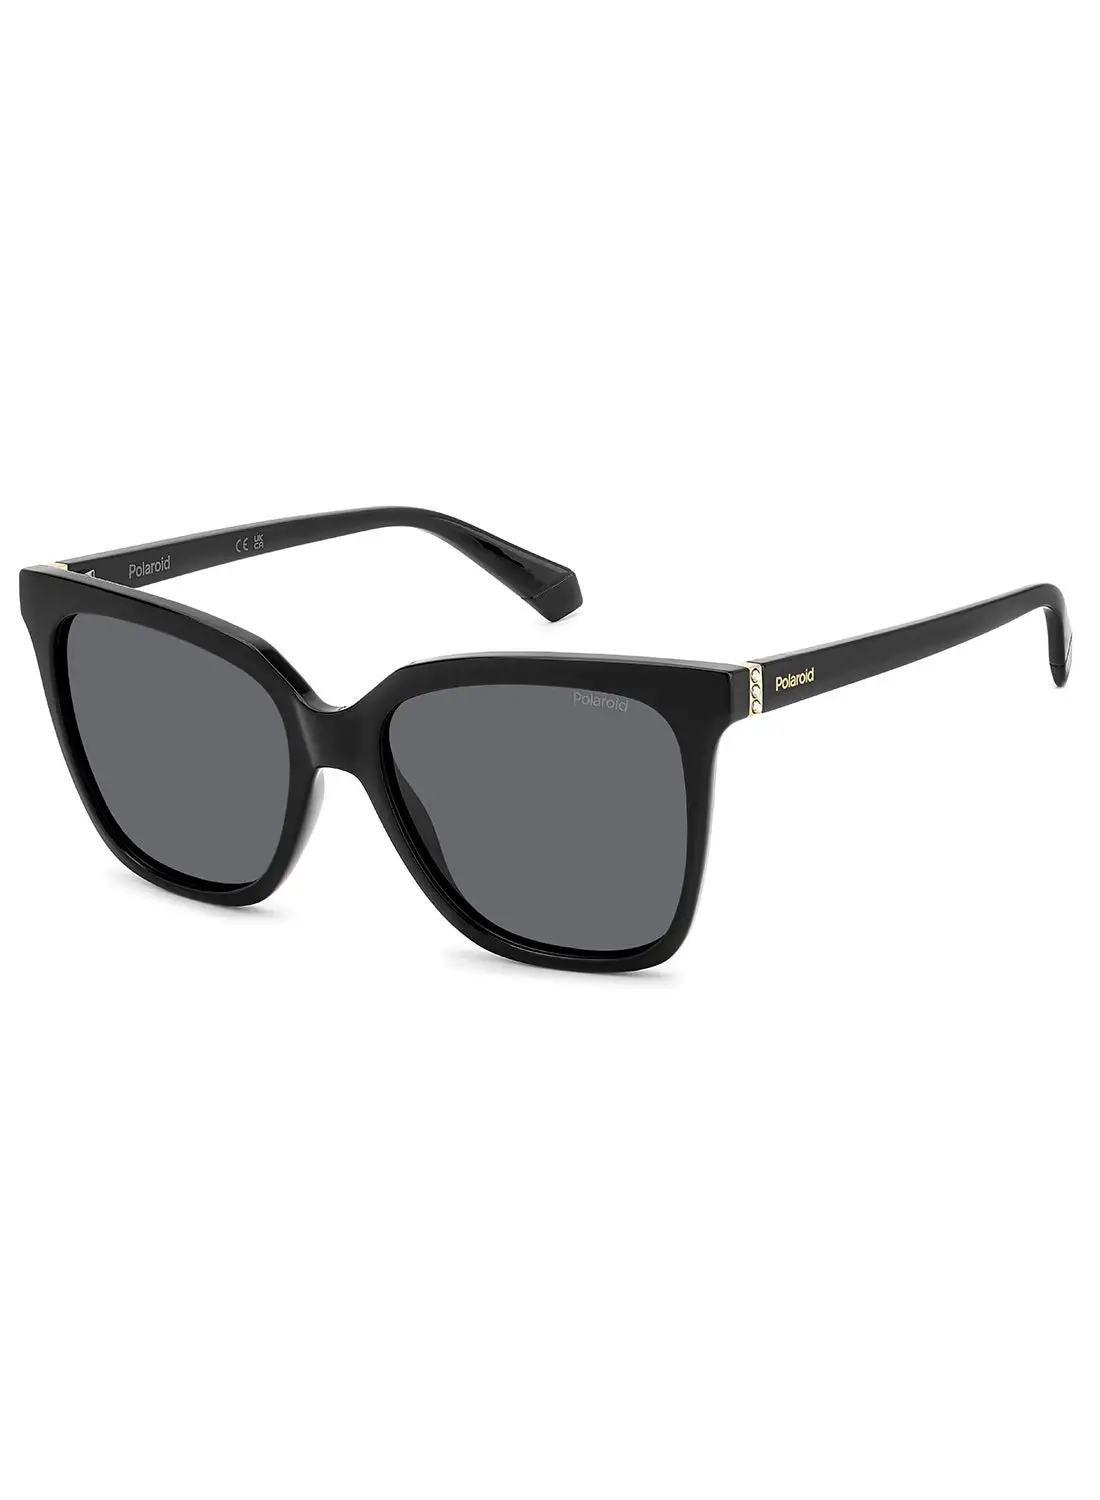 Polaroid Women's Polarized Square Sunglasses - Pld 4155/S/X Black Millimeter - Lens Size: 55 Mm